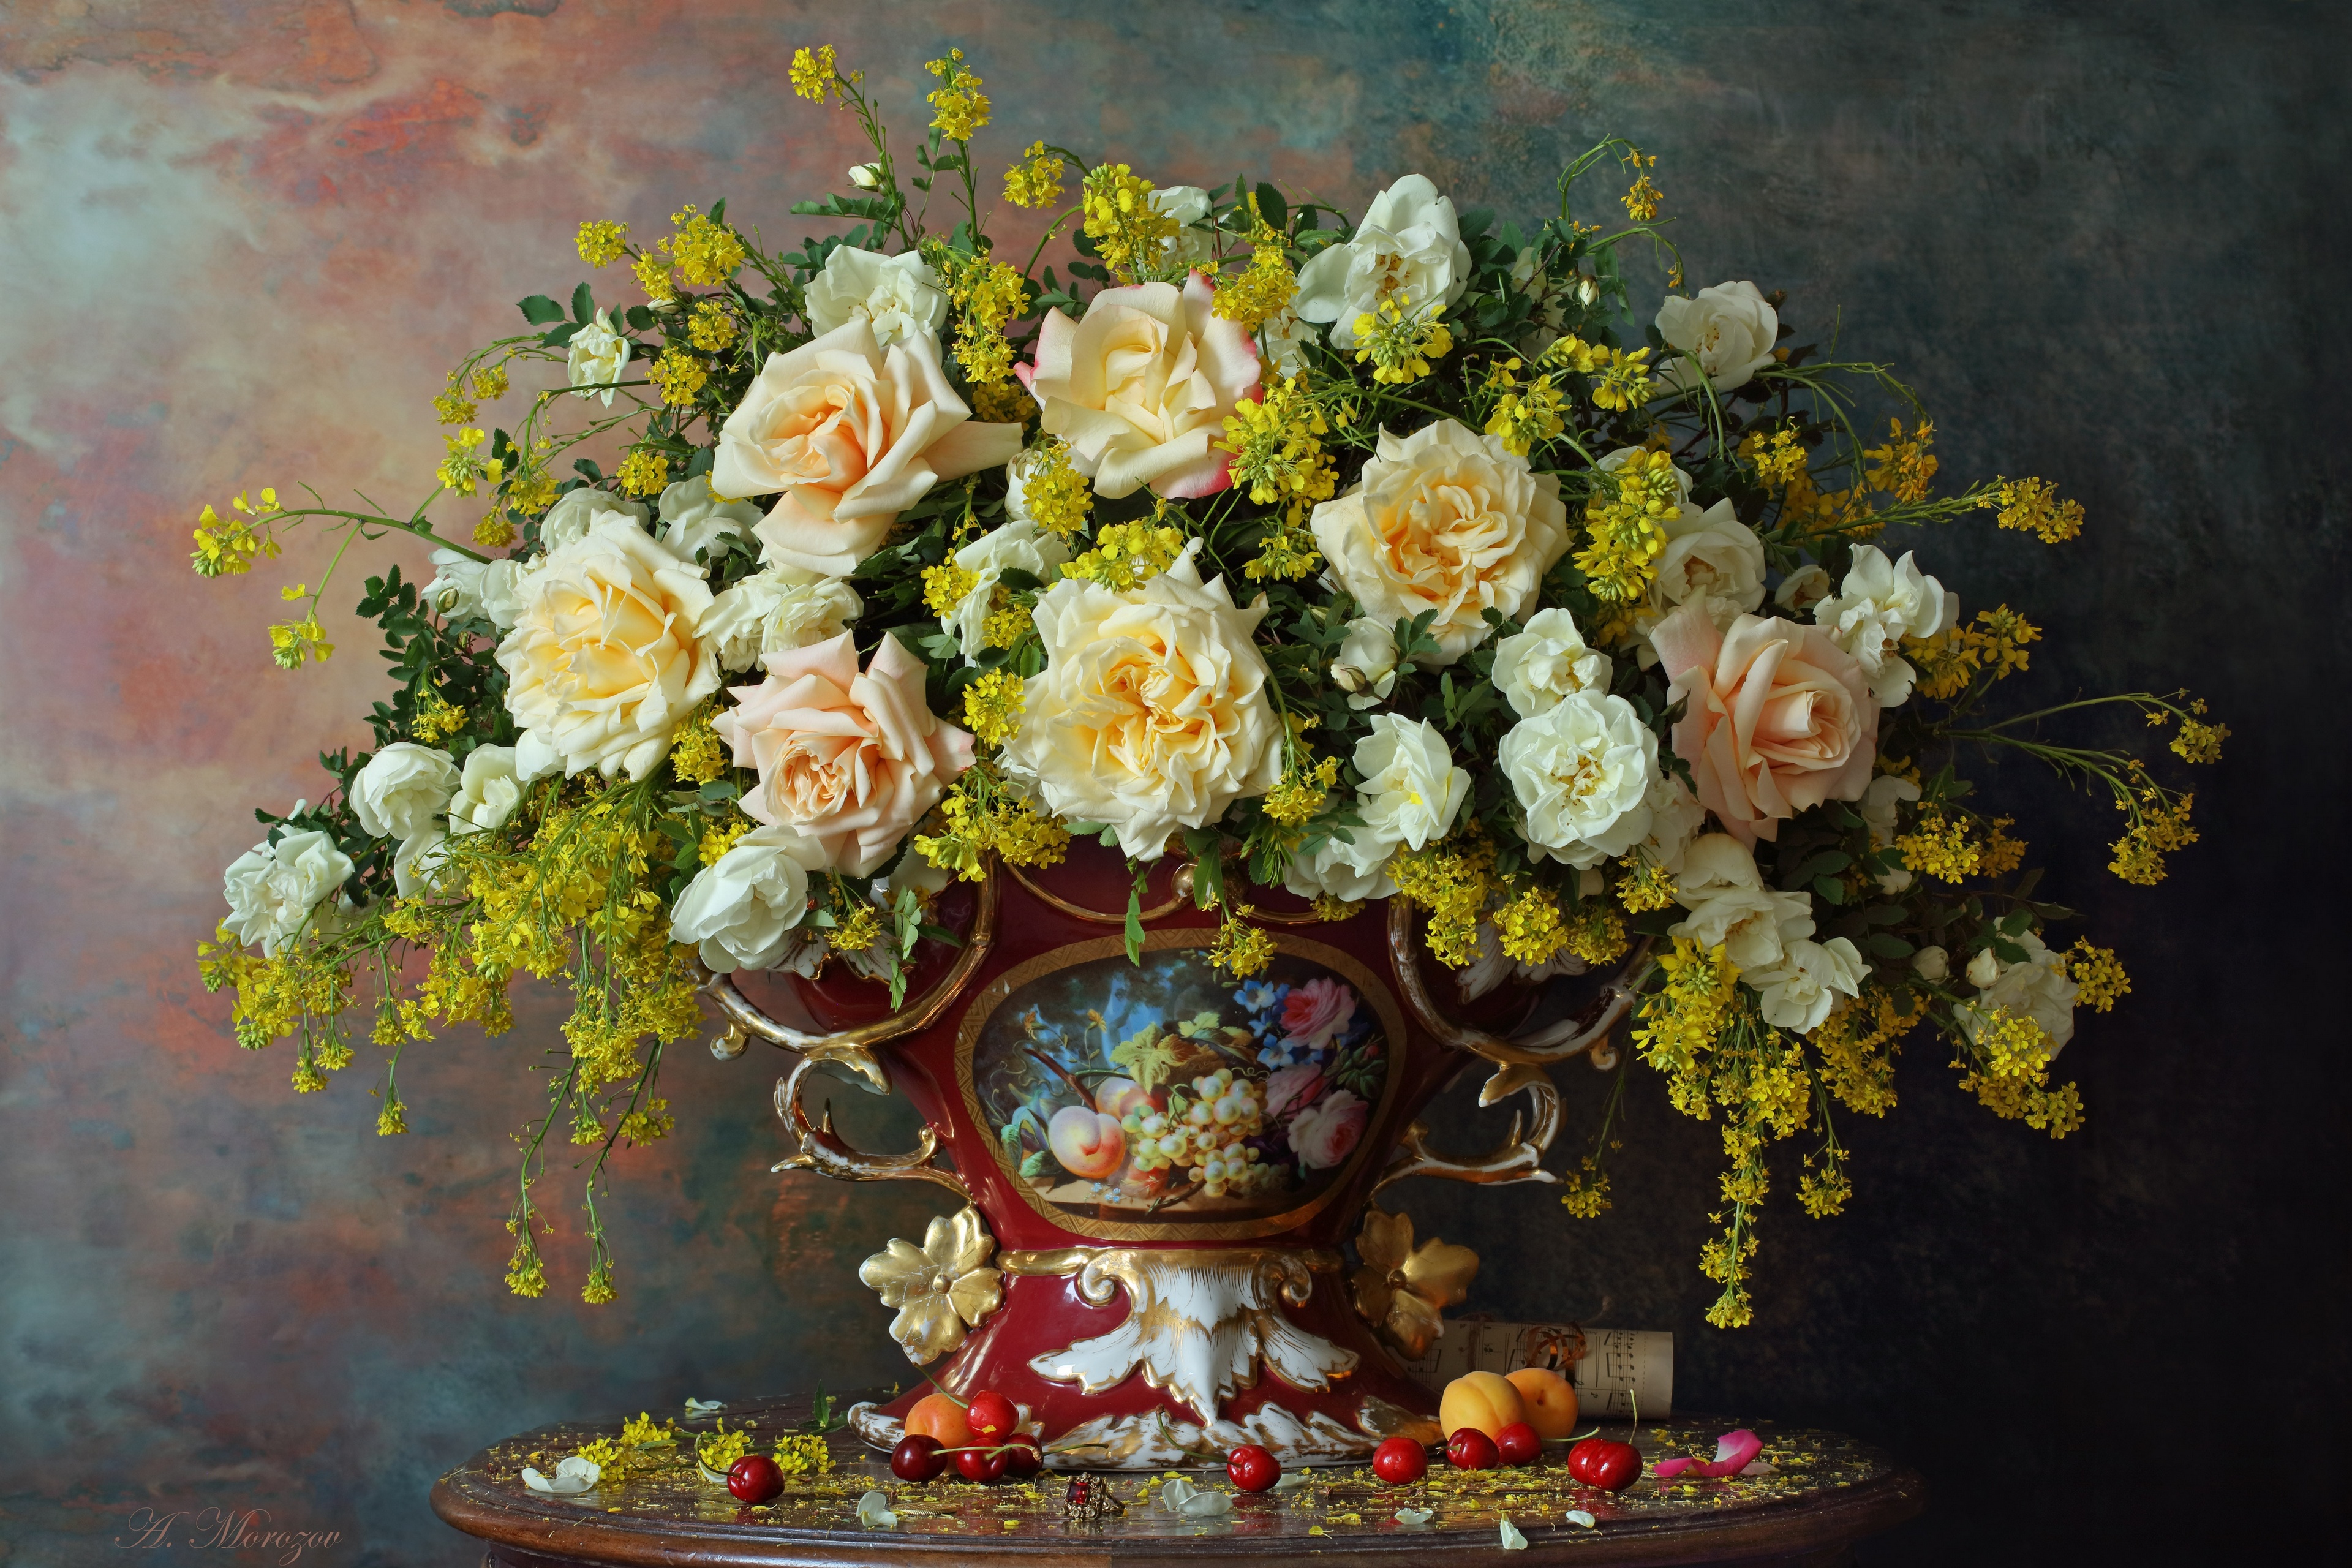 复古花瓶里装着美丽的白玫瑰花束